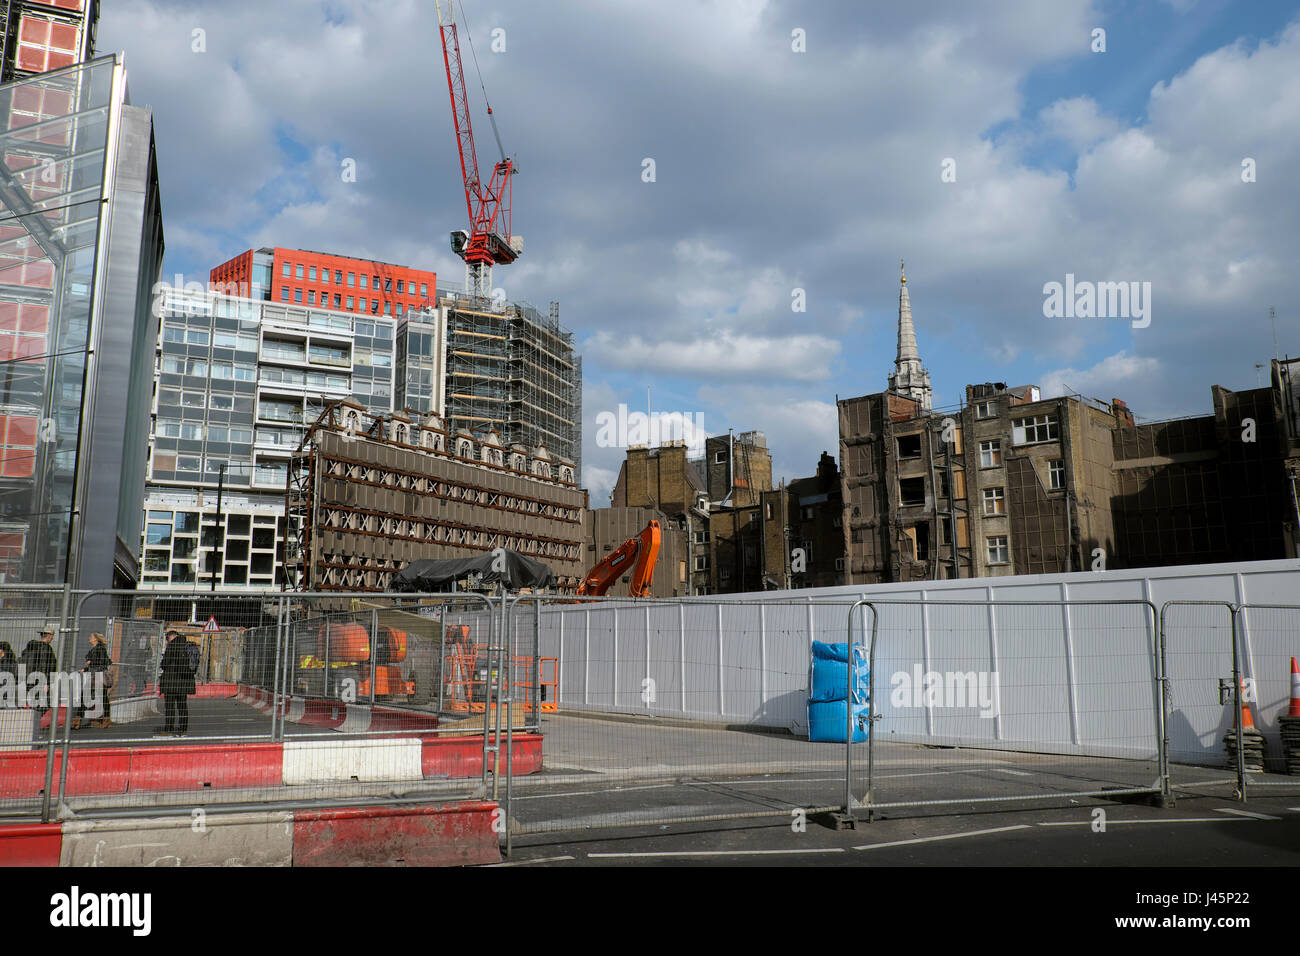 Ver edificio restante de demolición de Andrew Borde Street cerca de Tottenham Court Road mirando hacia la zona de St Giles London UK KATHY DEWITT Foto de stock